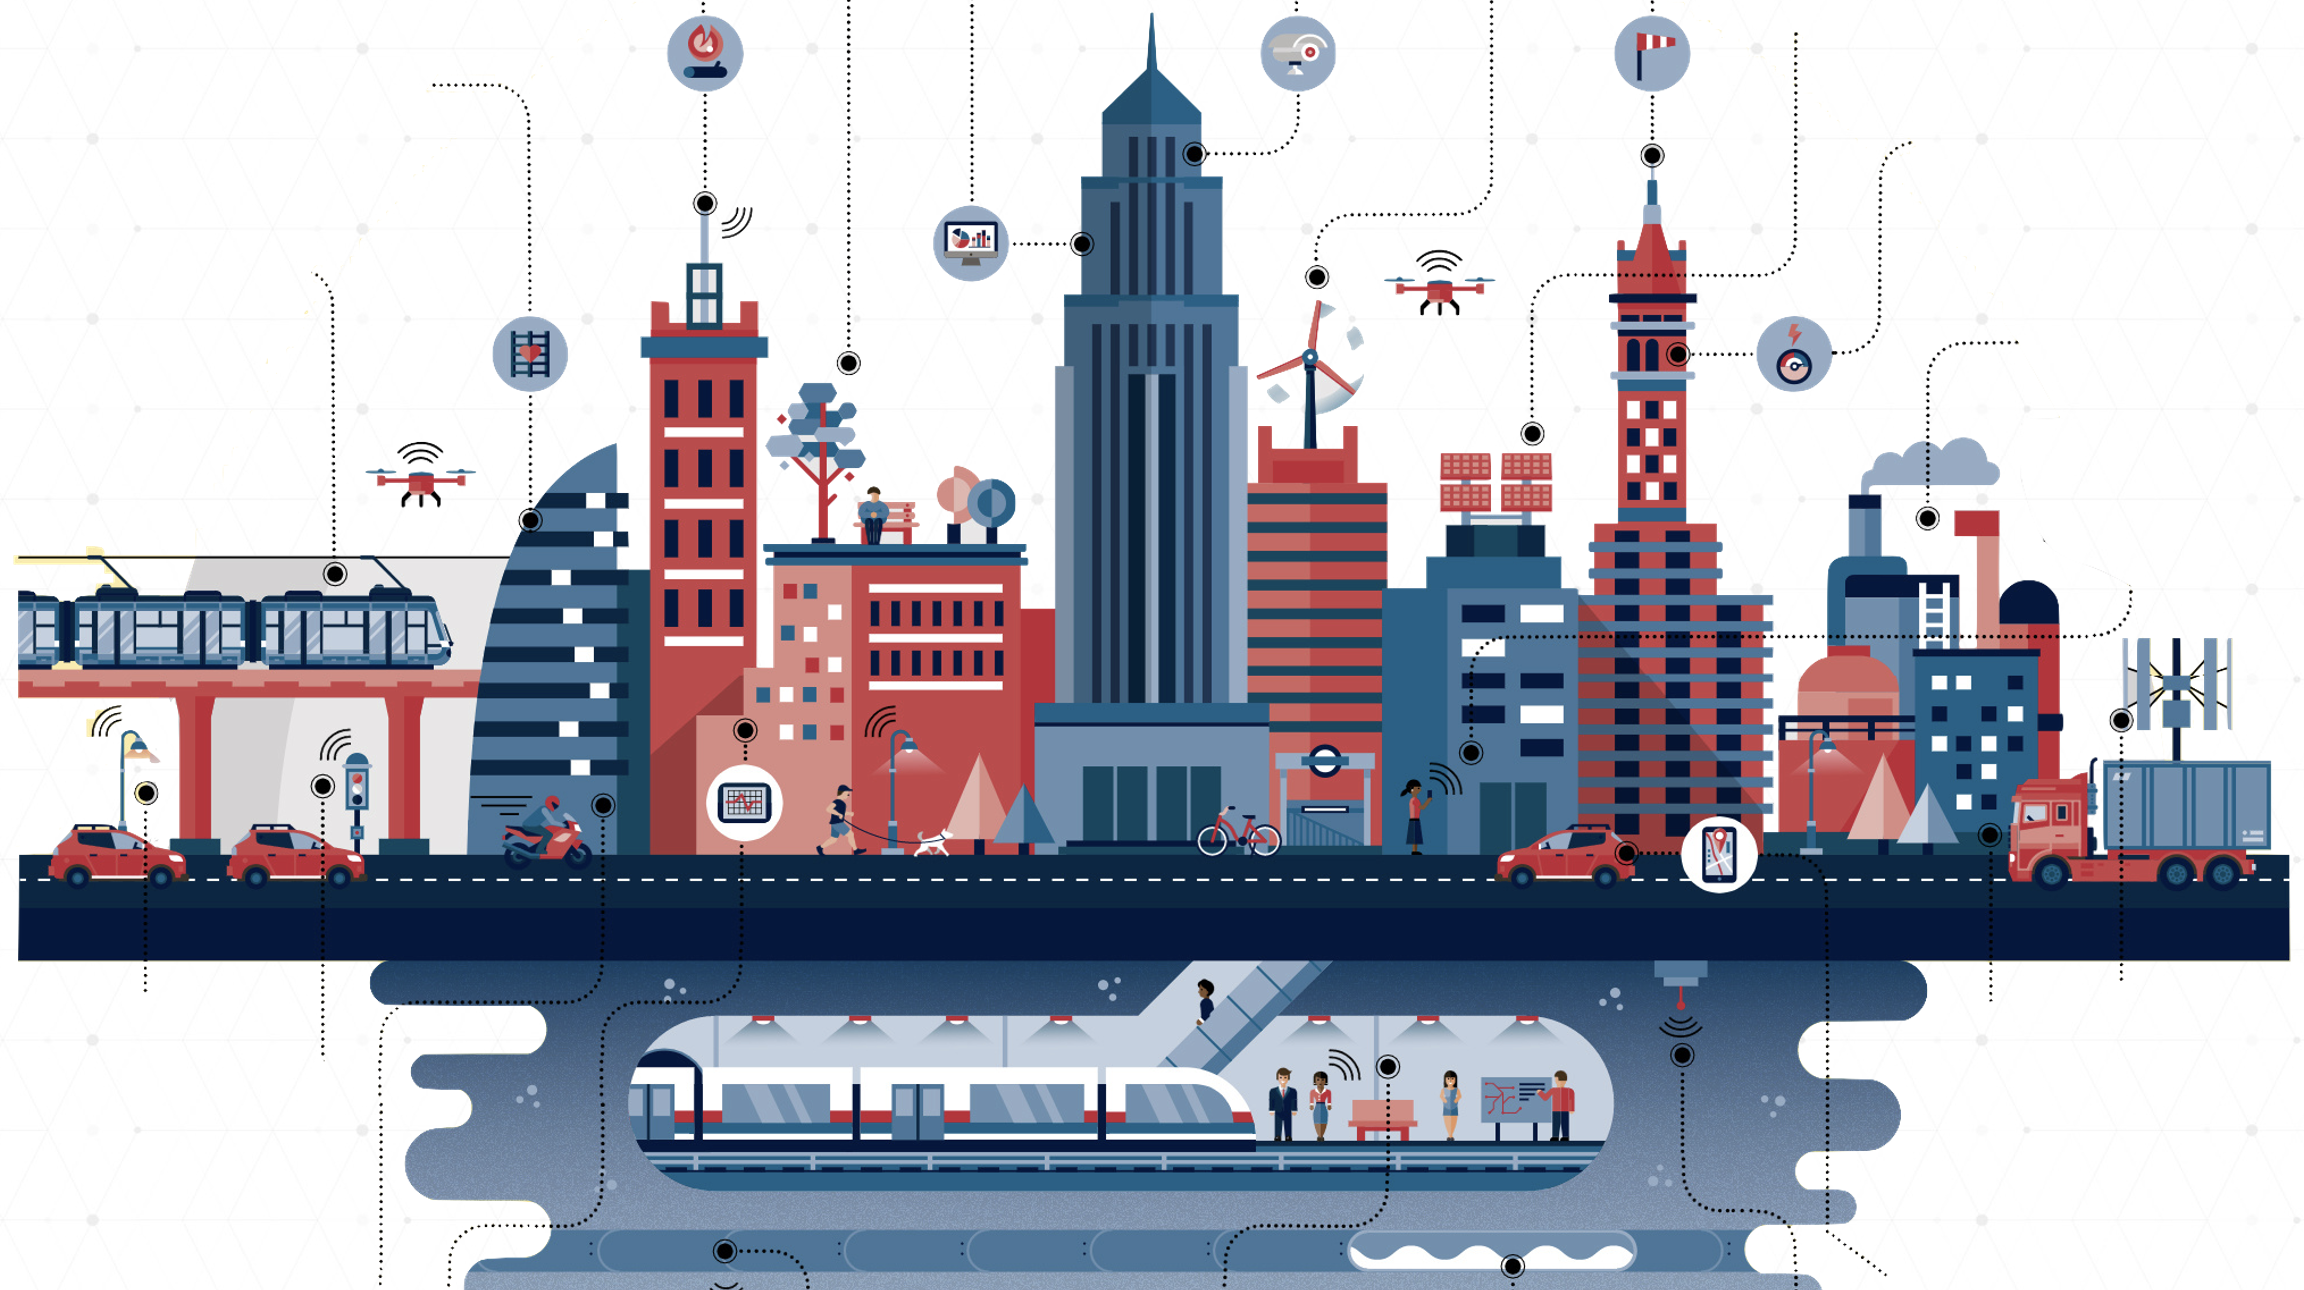 Smart City with Autonomous Systems